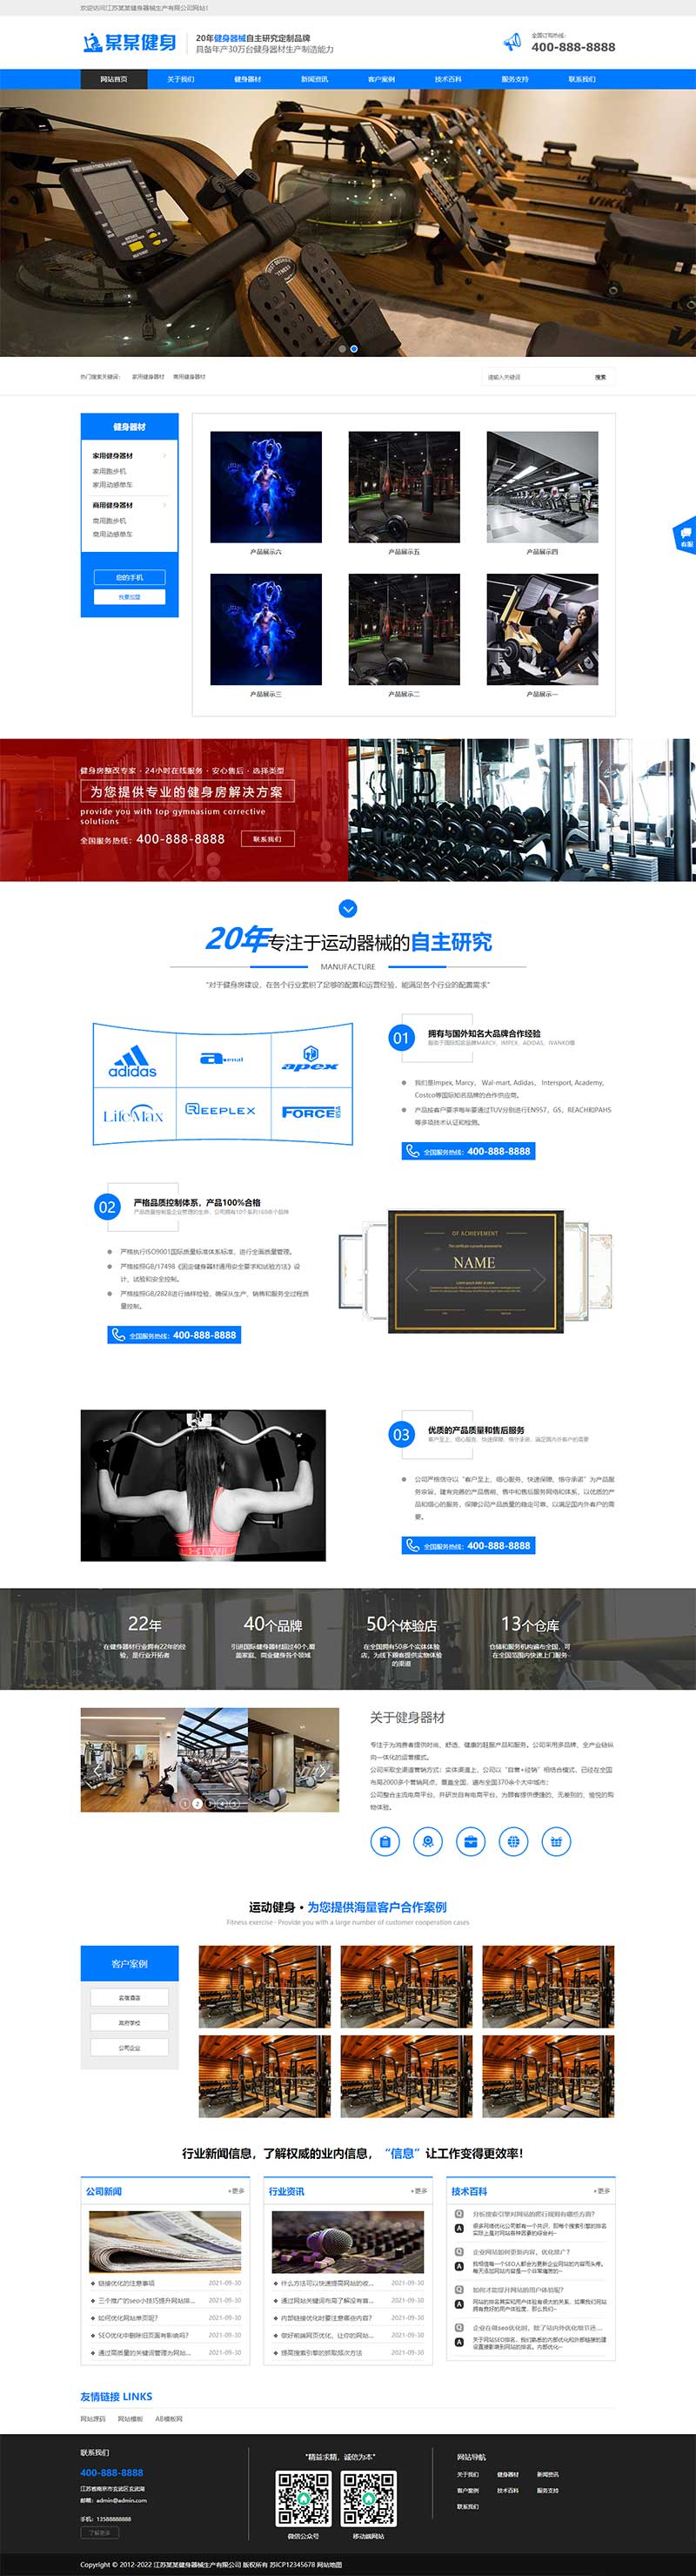 响应式营销型运动健身器材pbootcms网站模板-米酷主题